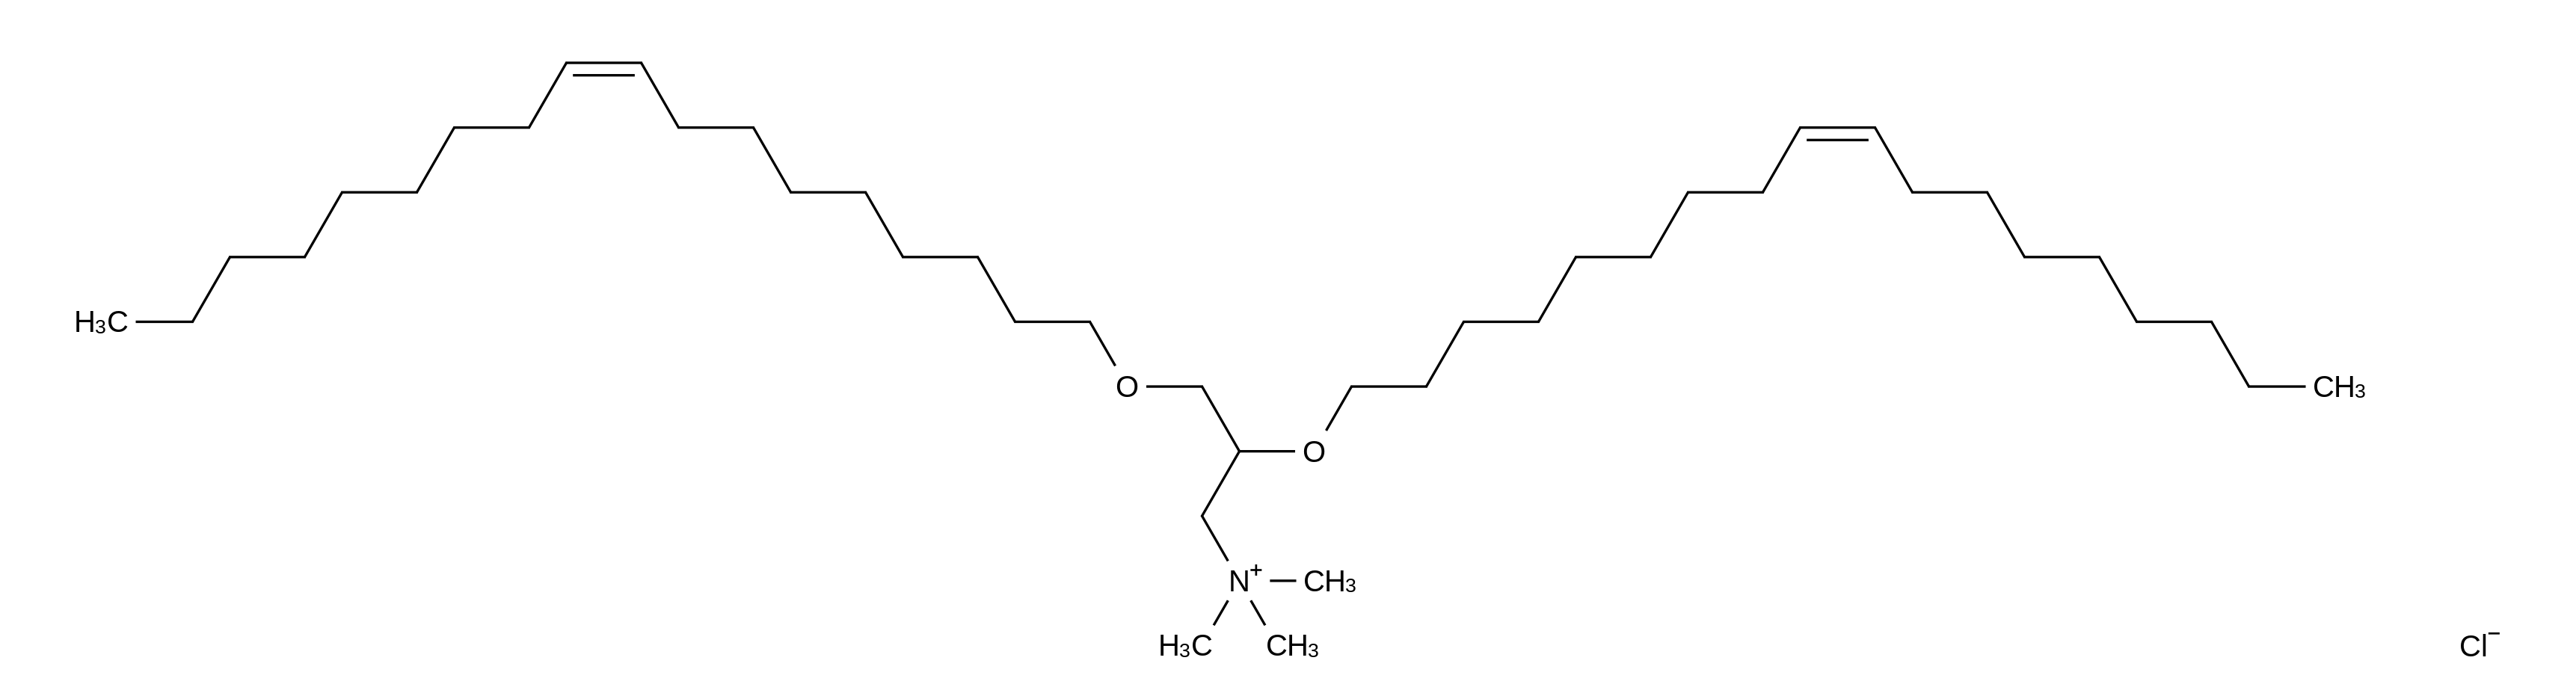 N-[1-(2,3-Dioleyloxy)propyl]-N,N,N-trimethylammonium Chloride